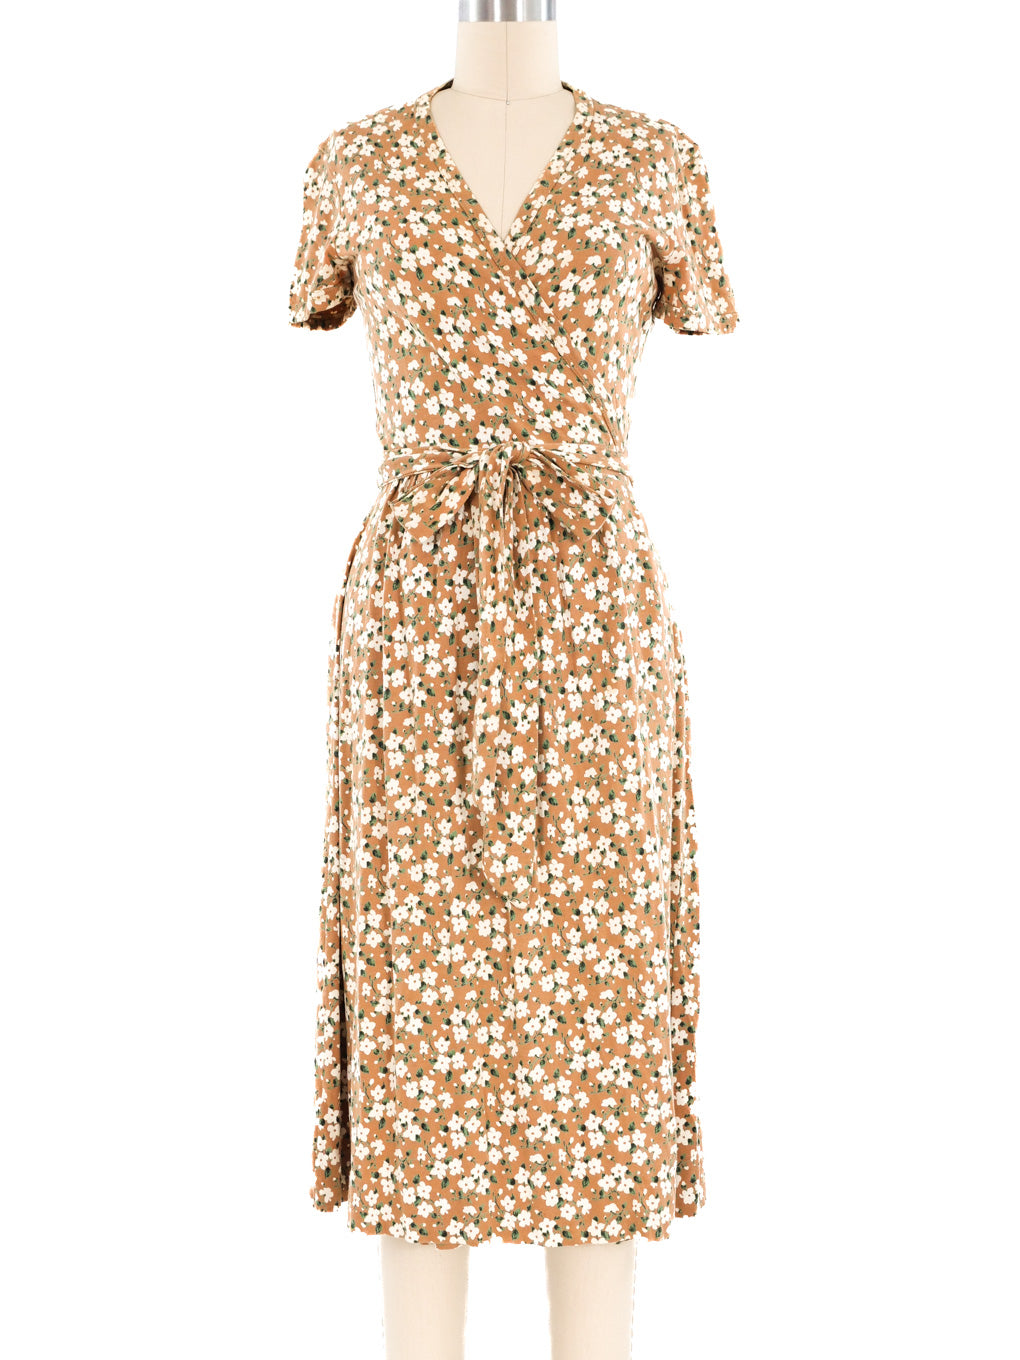 1970s Diane Von Furstenberg Tan Floral Wrap Dress